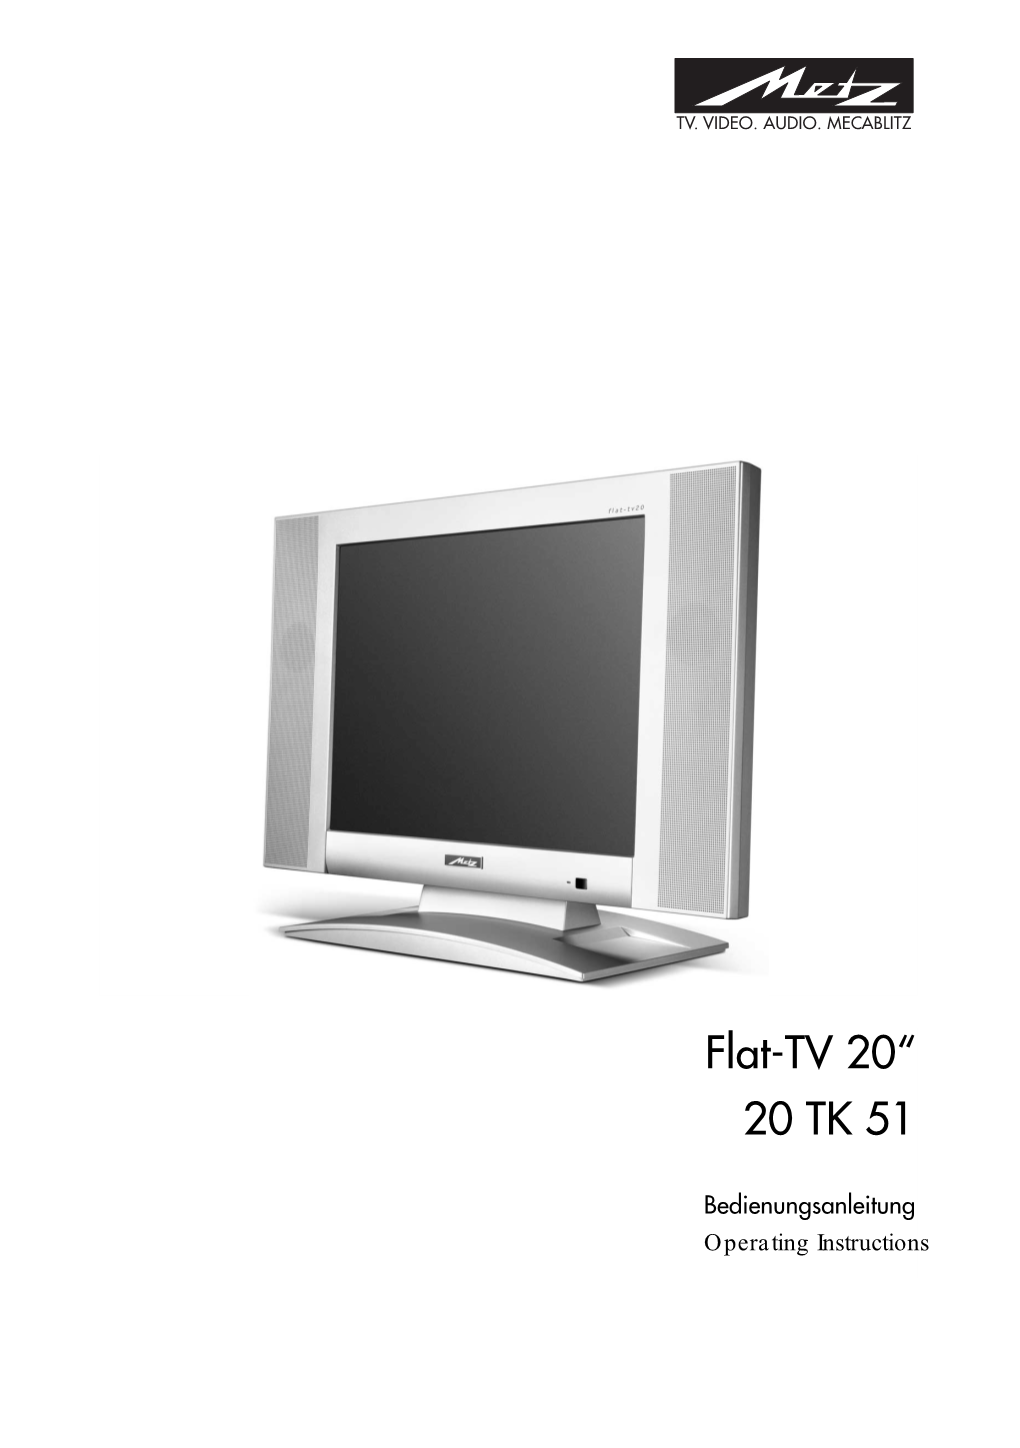 Flat-TV 20" 20 TK 51